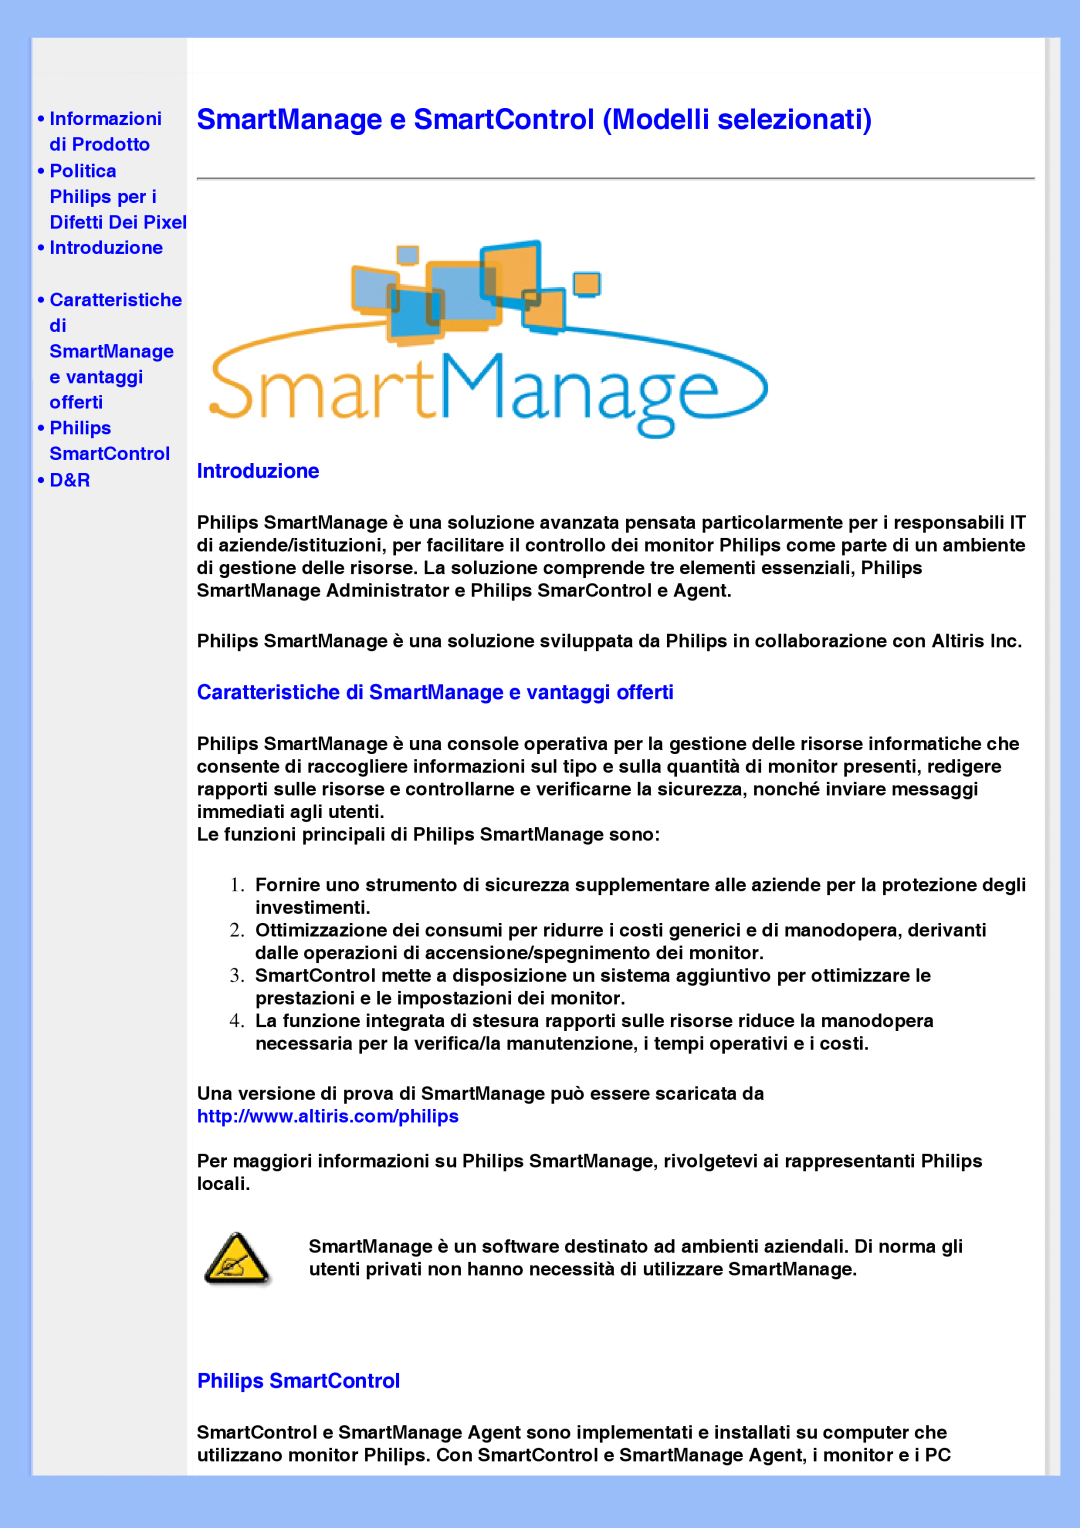 Philips 220VW8 user manual SmartManage e SmartControl Modelli selezionati, Philips SmartControl, •Introduzione, •D&R 